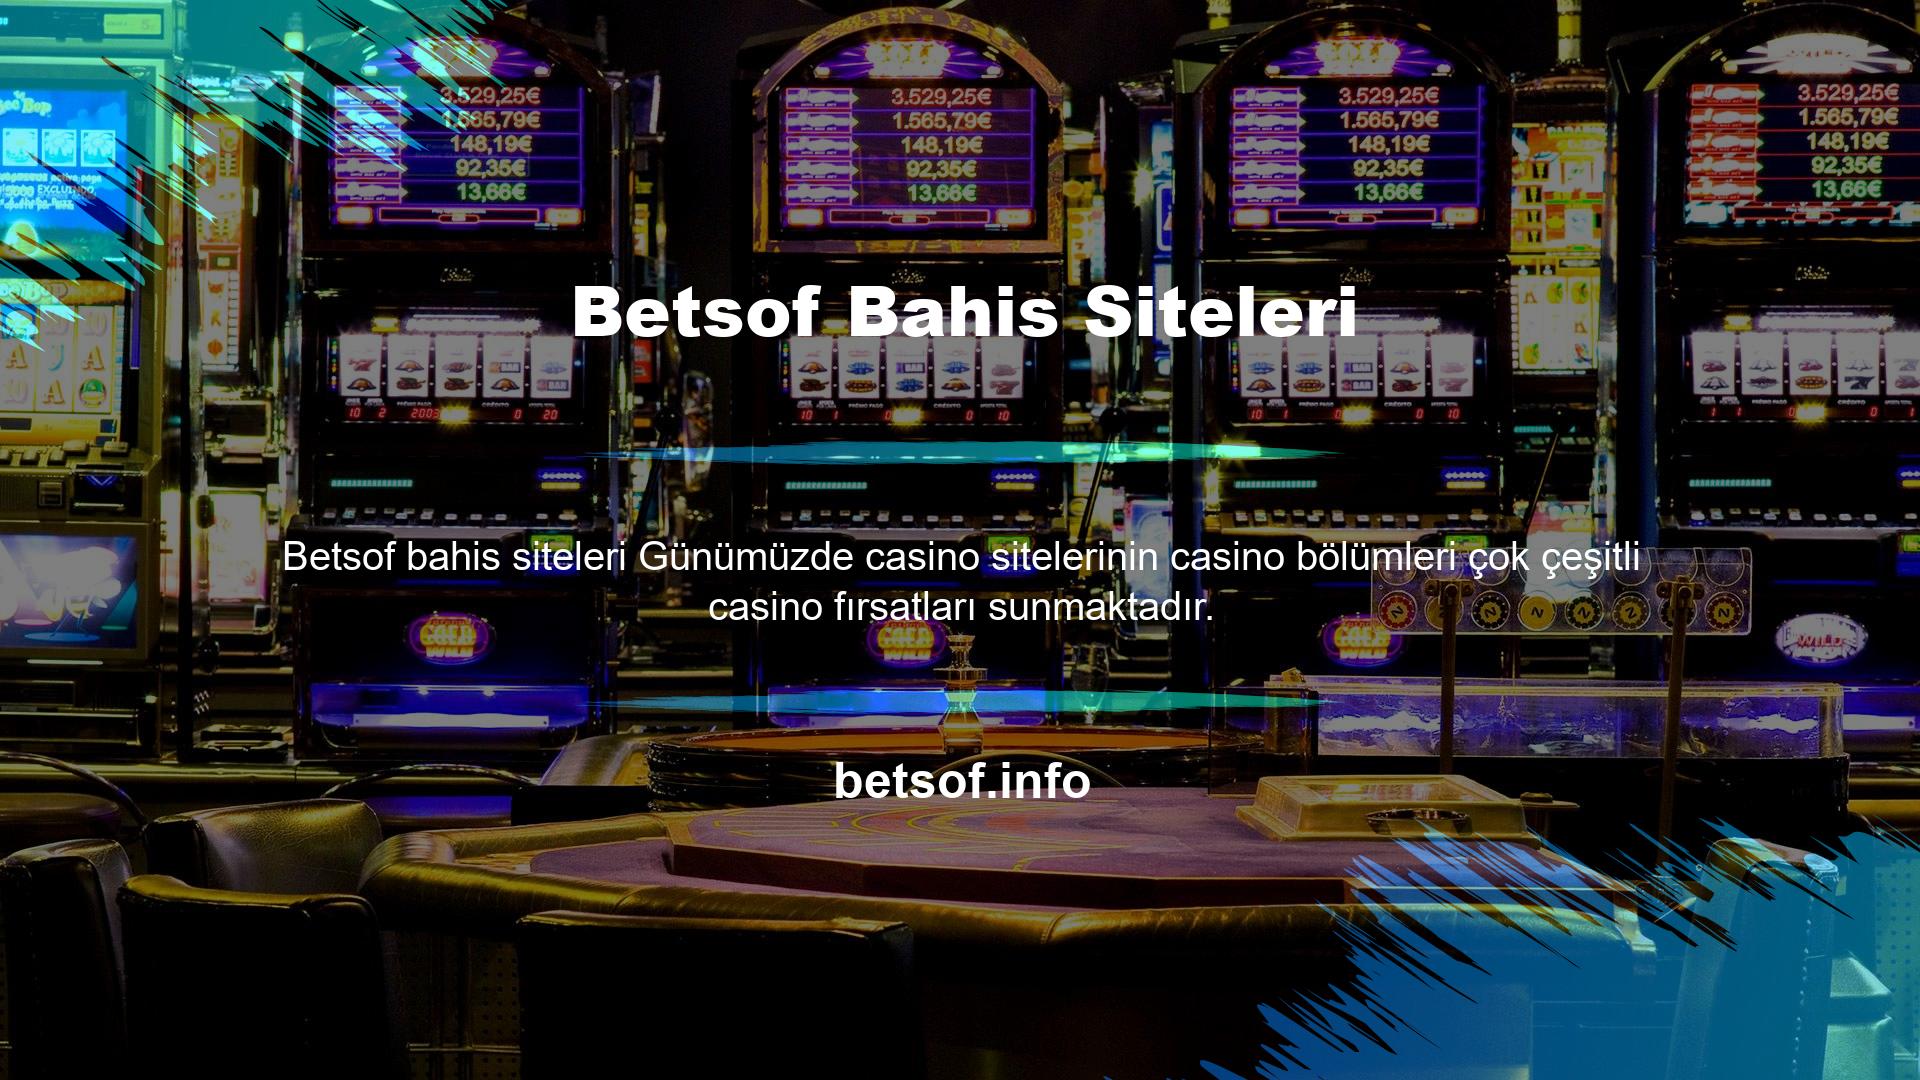 Oyuncular bu sitelere üye olup para yatırdıktan sonra bahis ve casino oyunları ile kısa sürede para yatırma işlemlerini arttırabilirler